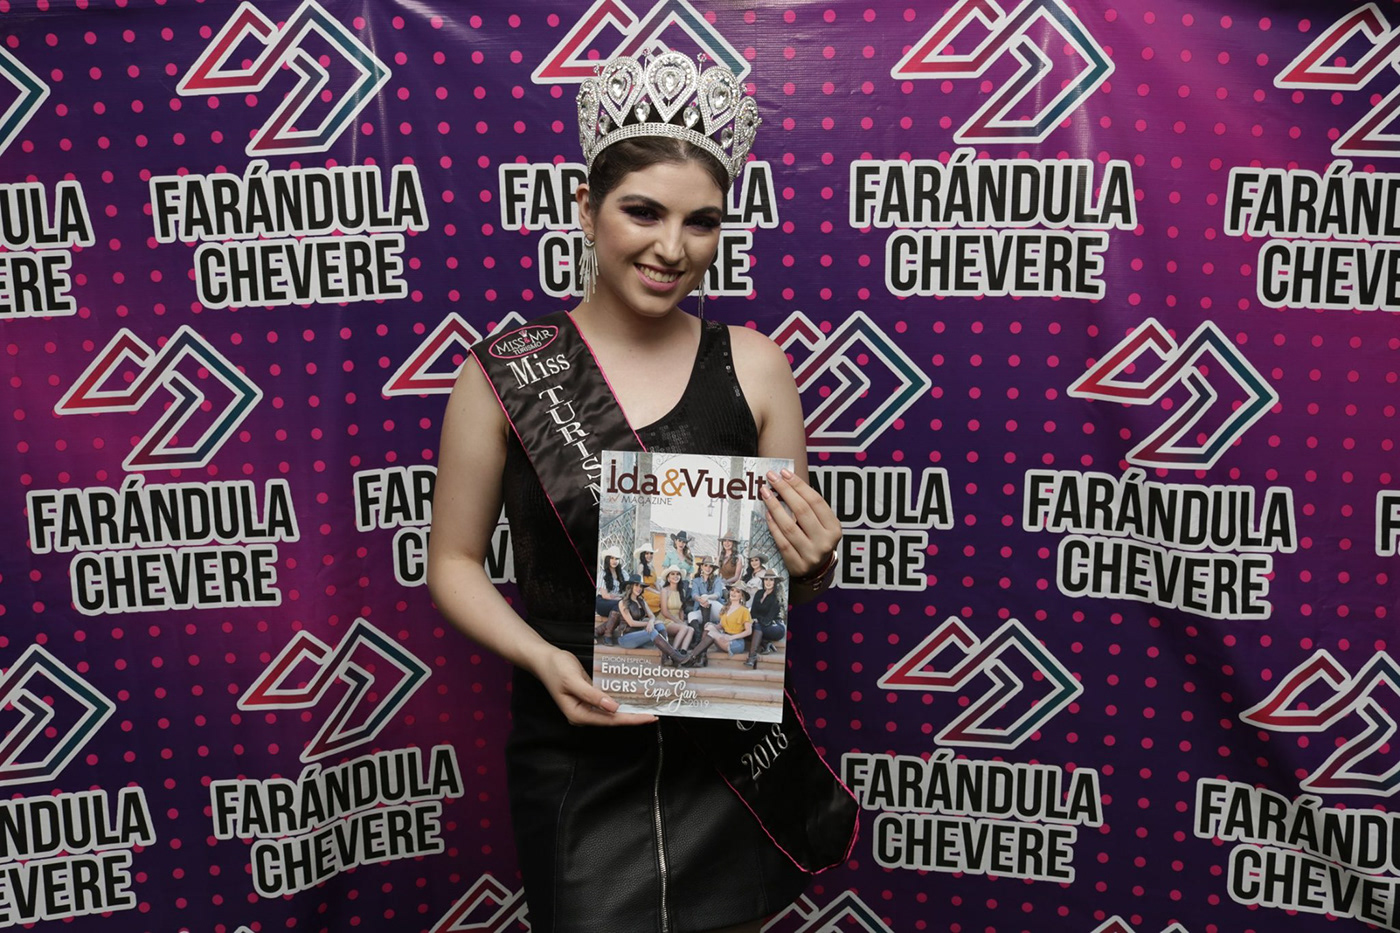 FARANDULA CHEVERE fch hermosillo live show mexico music queen sonora Stand